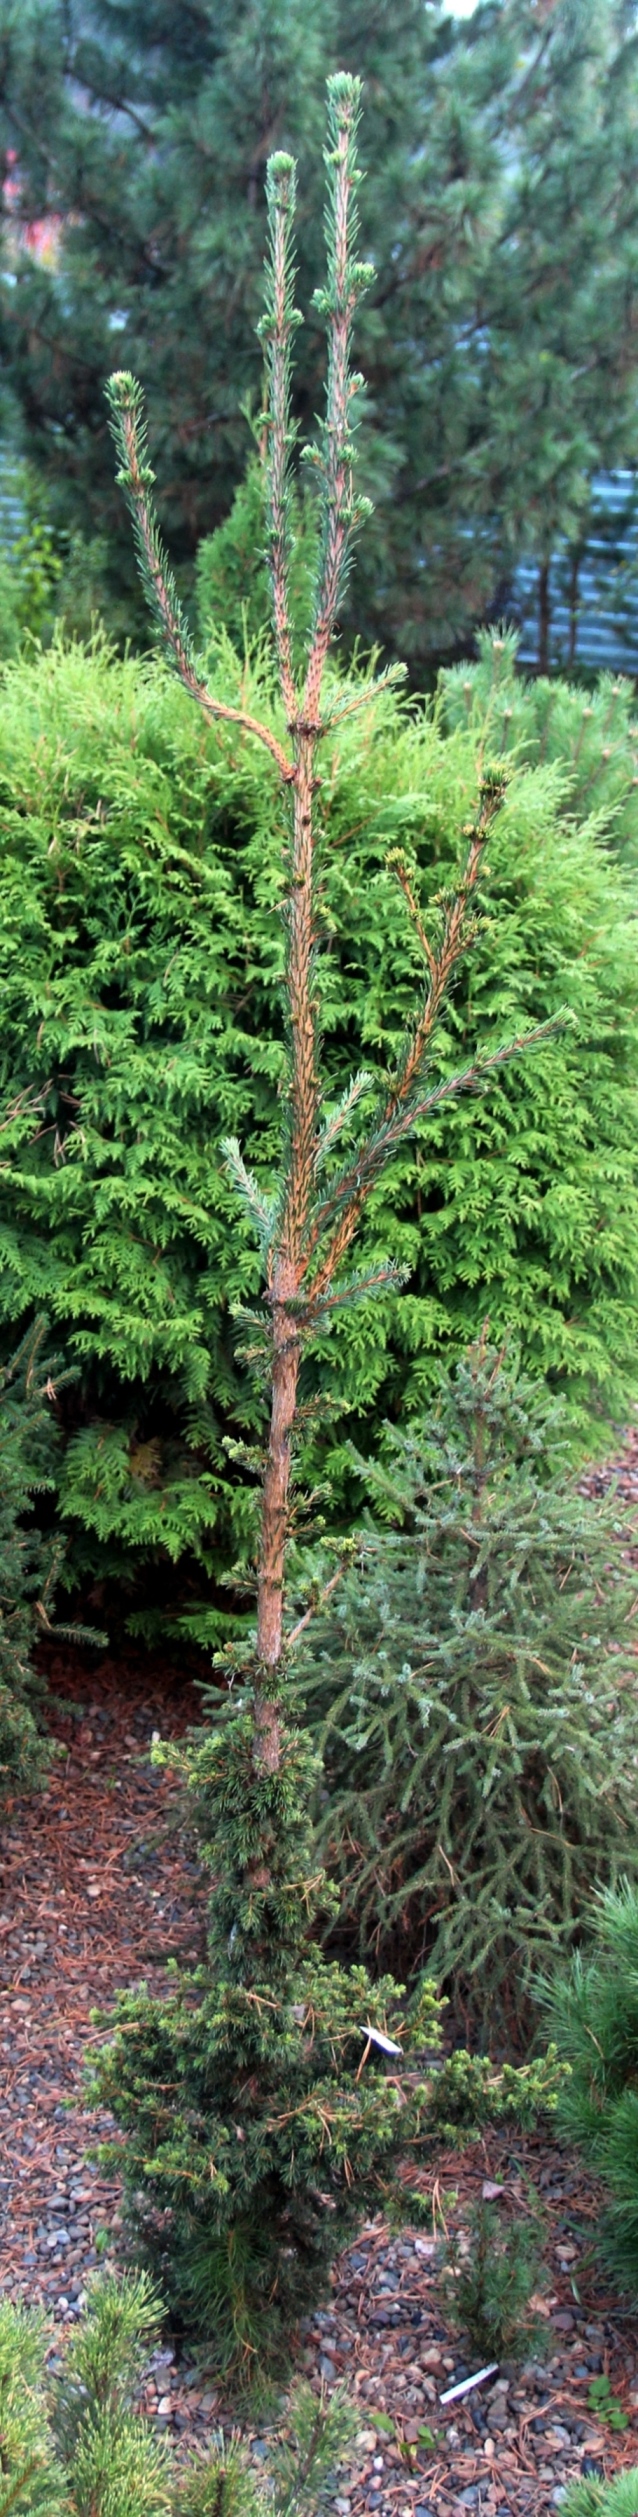 От сибирских елей перейдем к экзотическим. Наш новый сорт ели гималайской, Picea smithiana ‘Эверест’. Отбор из посева. Удивительно, но факт, он показал себя вполне устойчивым в Сибири. Имеет совершенно уникальную форму: высота в 5 раз больше ширины. Предназначен для того, чтобы удивлять.  